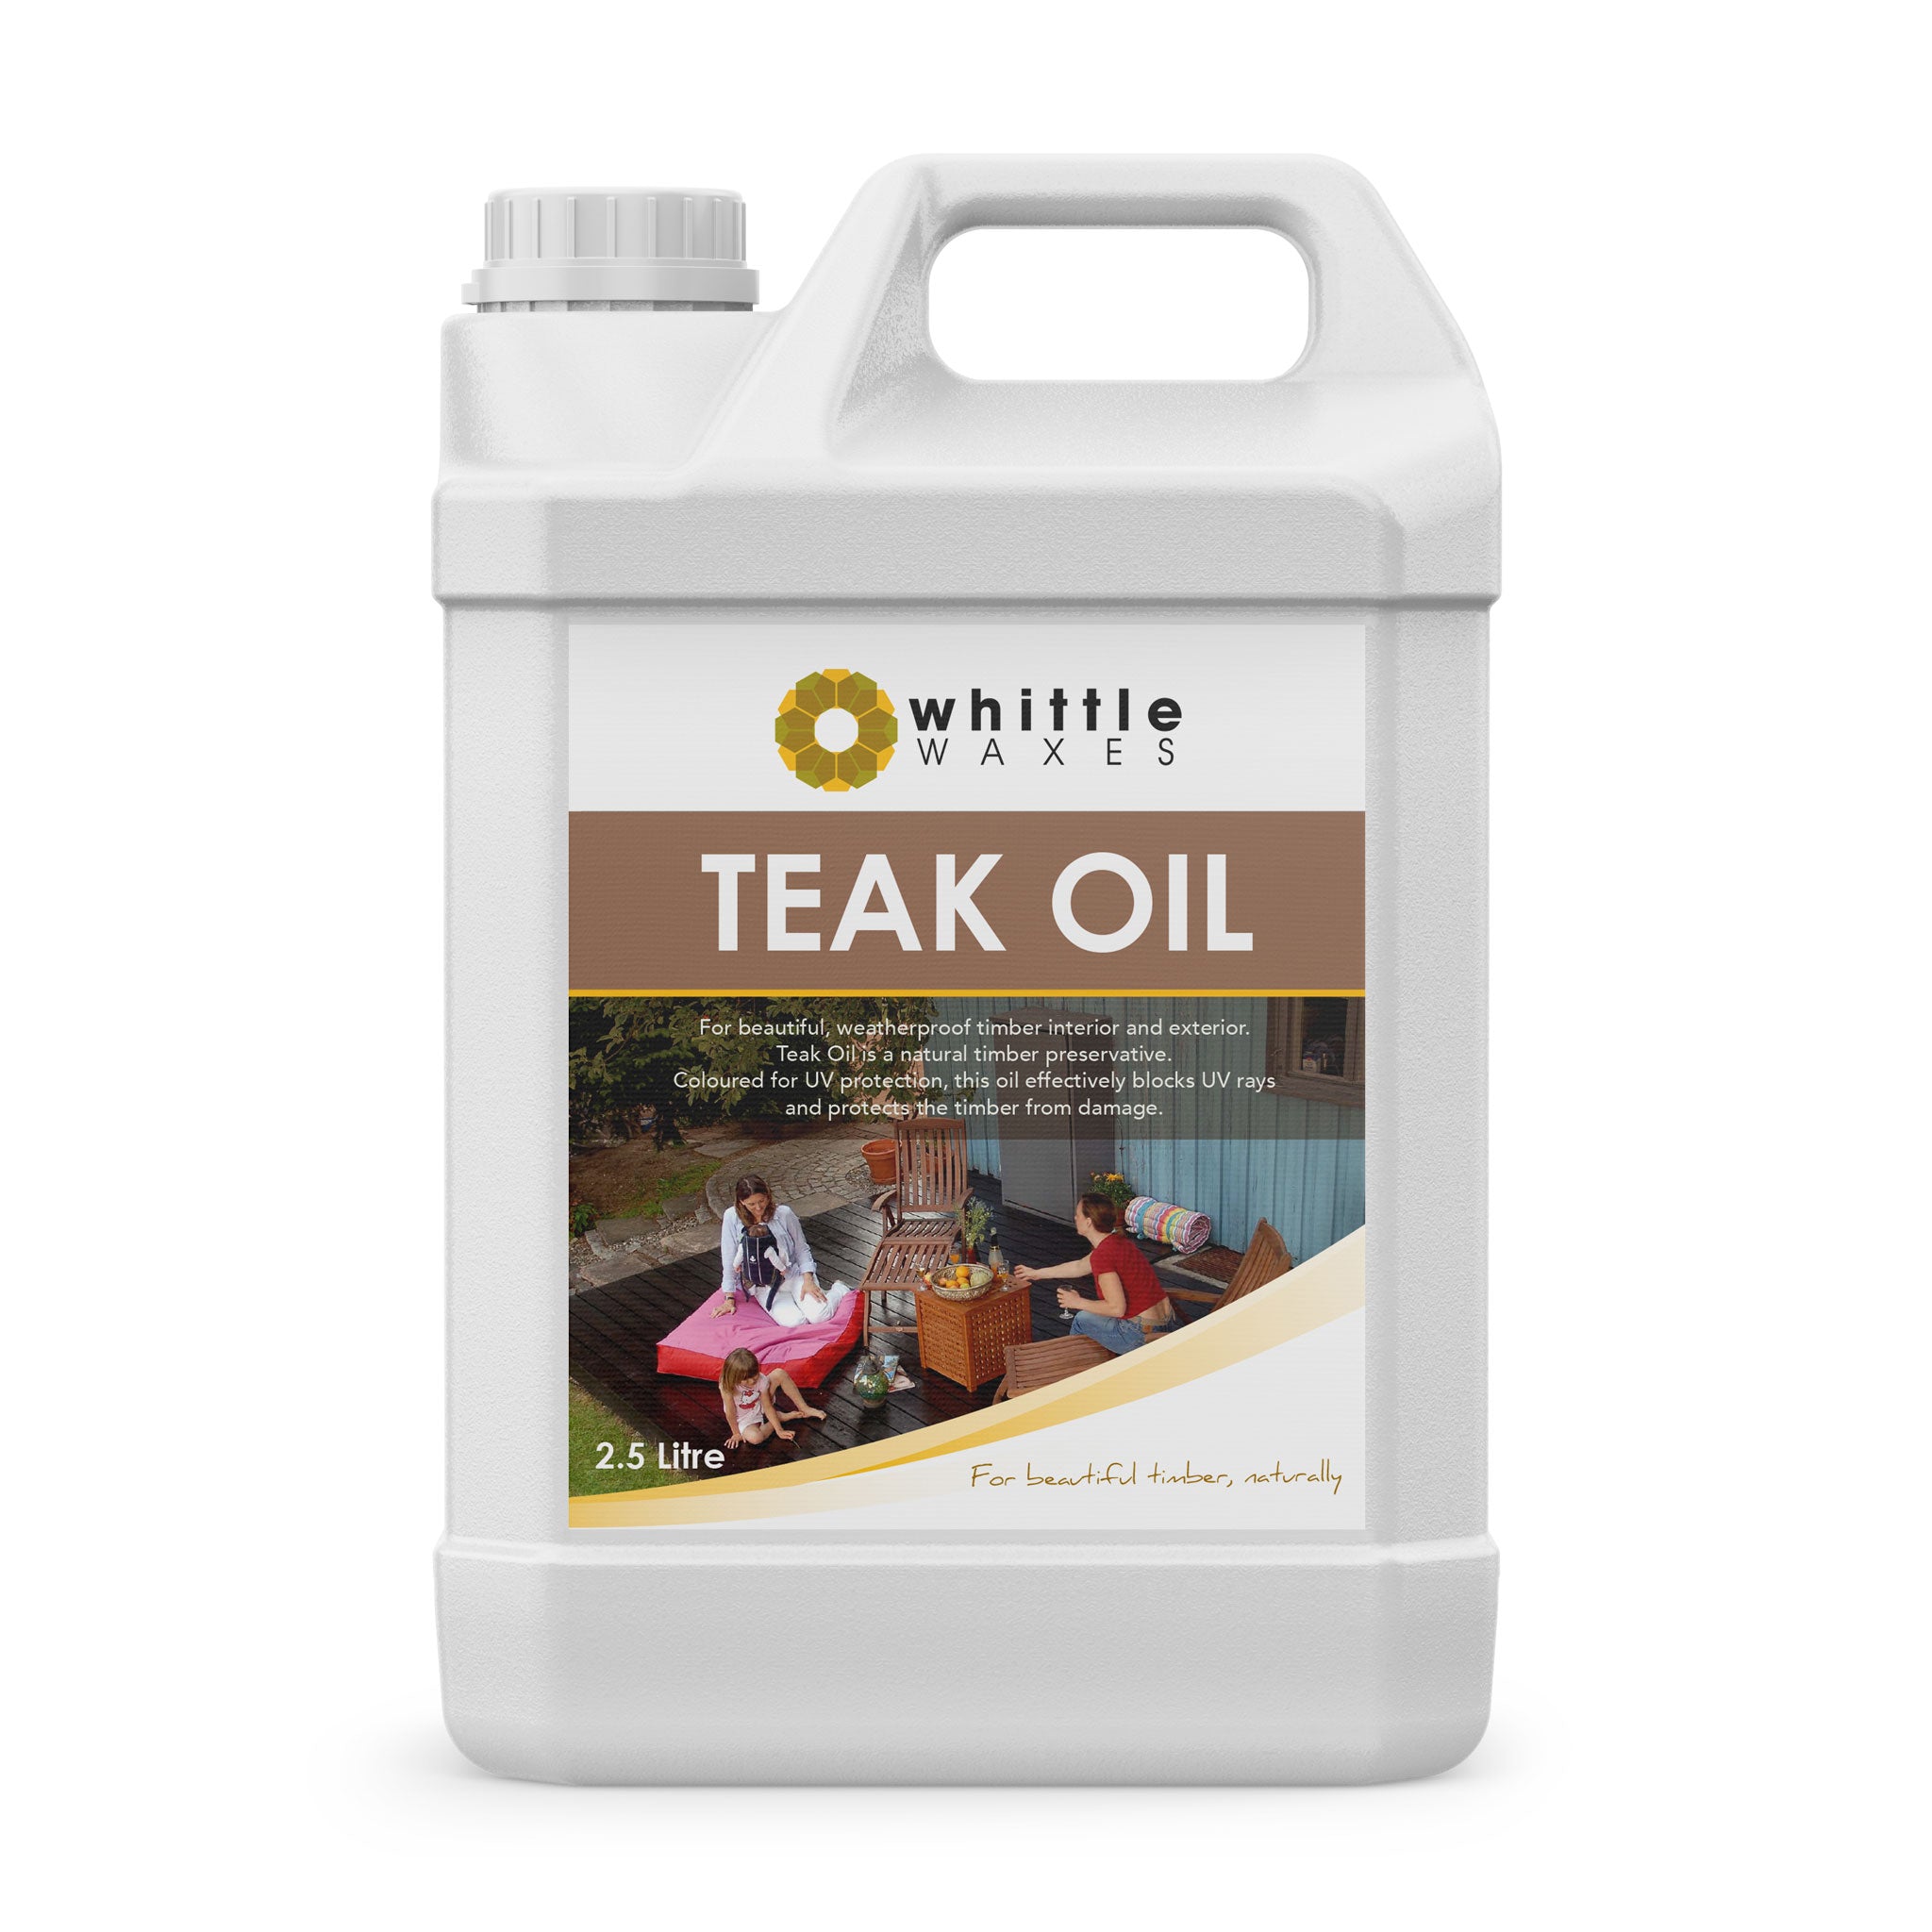 Whittle Waxes Teak Oil - for beautiful weatherproof decks - 2.5 litre